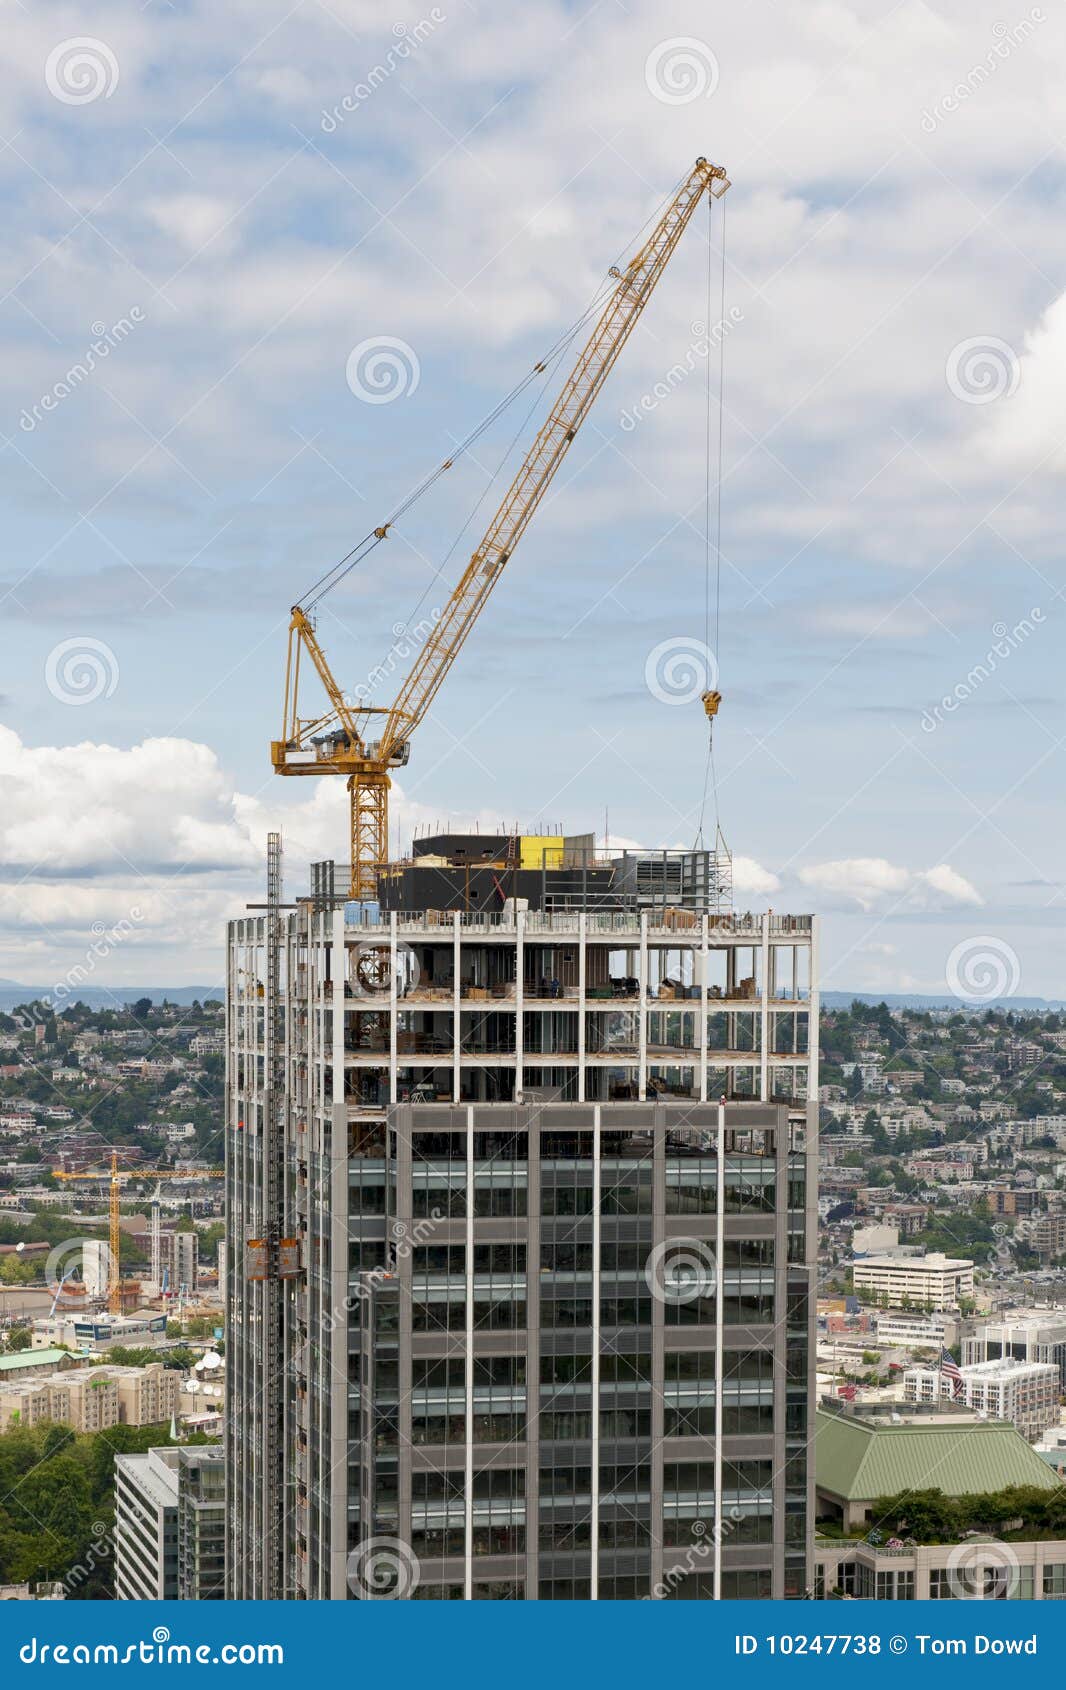 crane constructing skyscraper